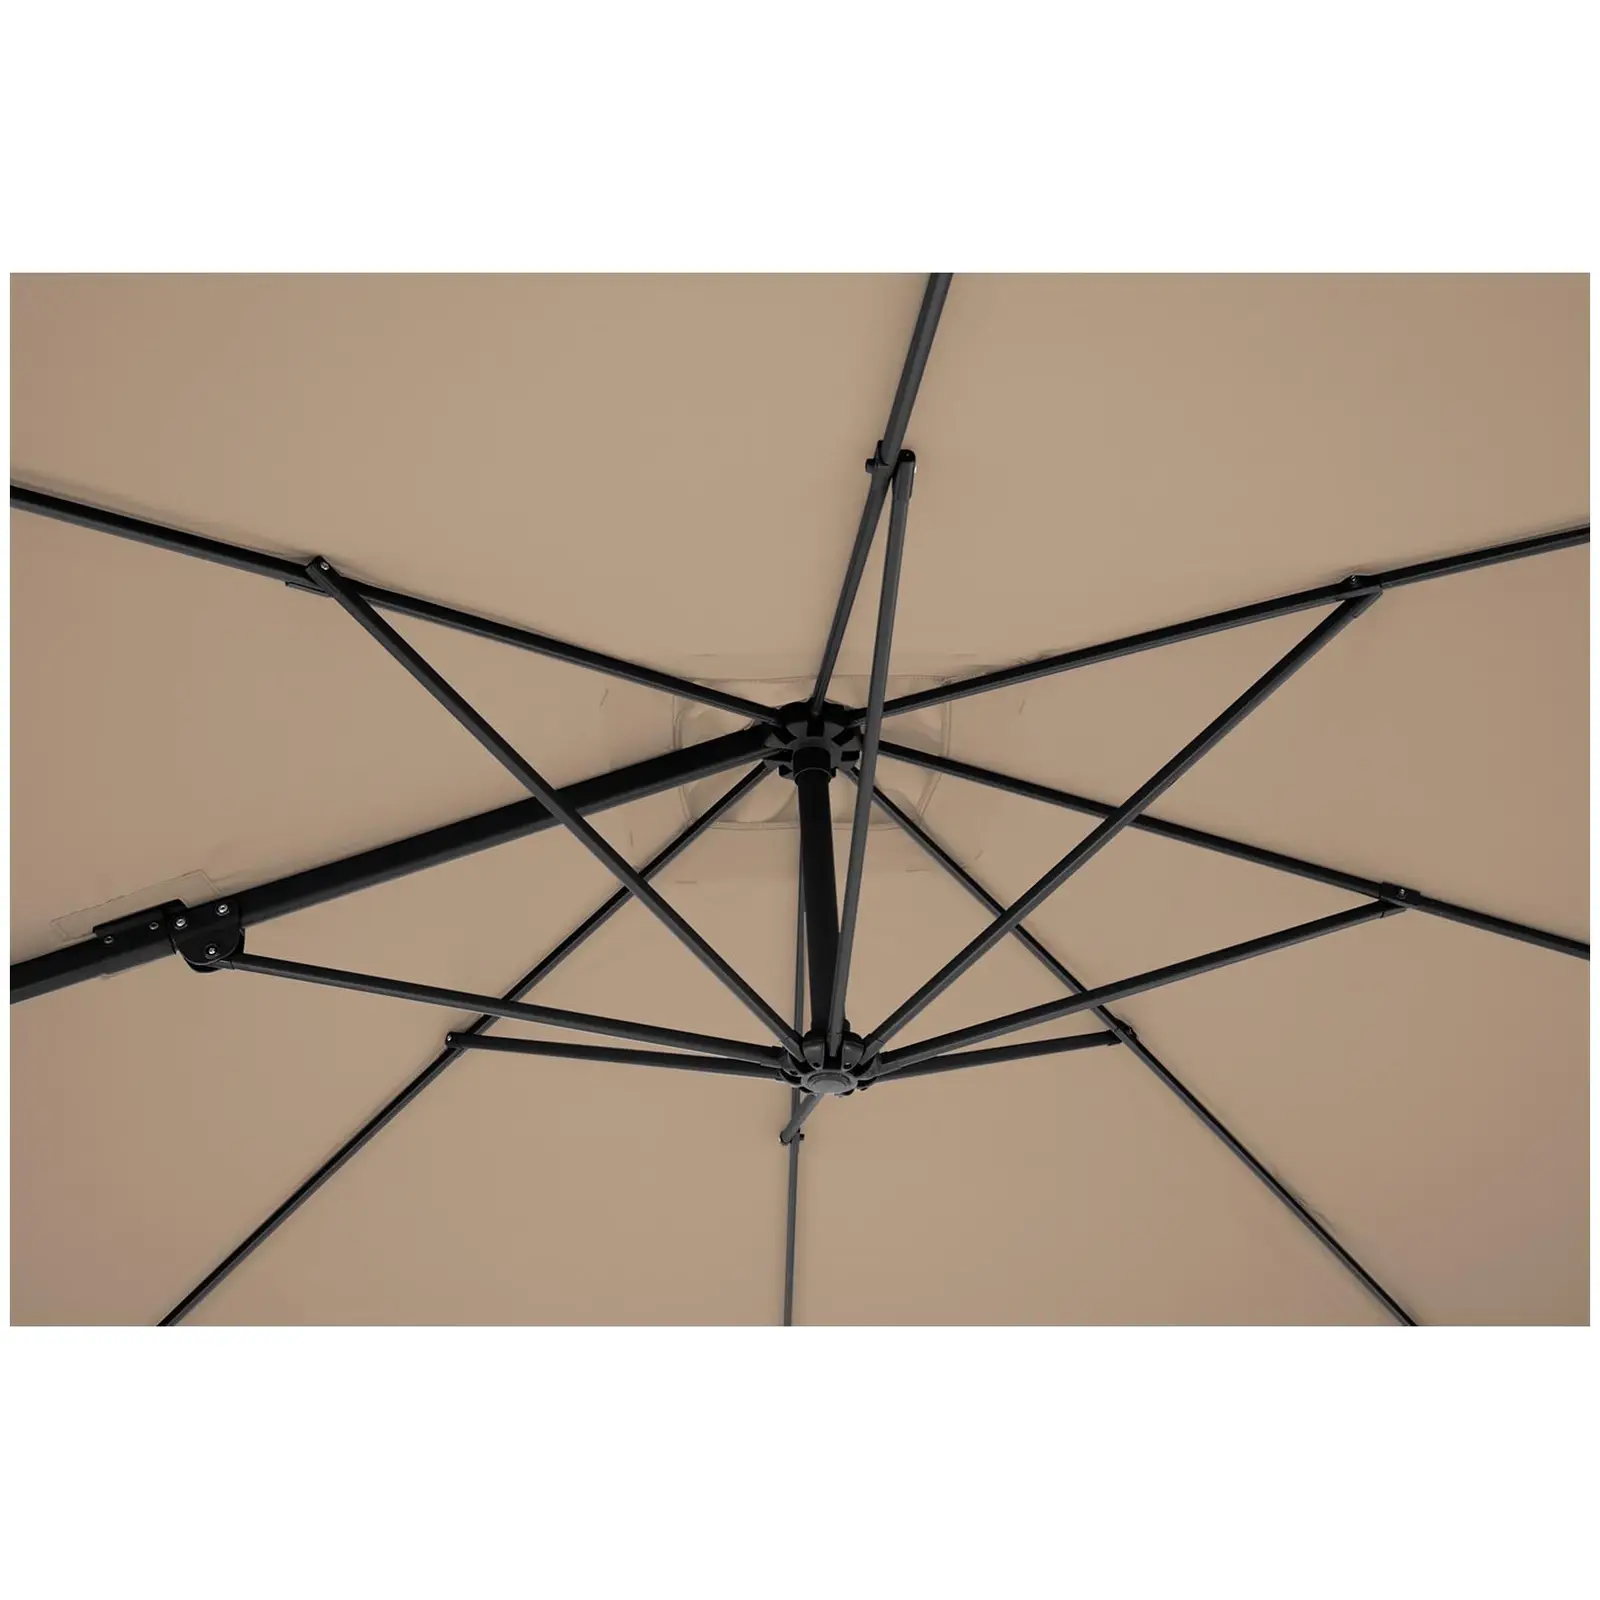 Andrahandssortering Hängparasoll - taupe - rund - Ø 250 cm - vridbar